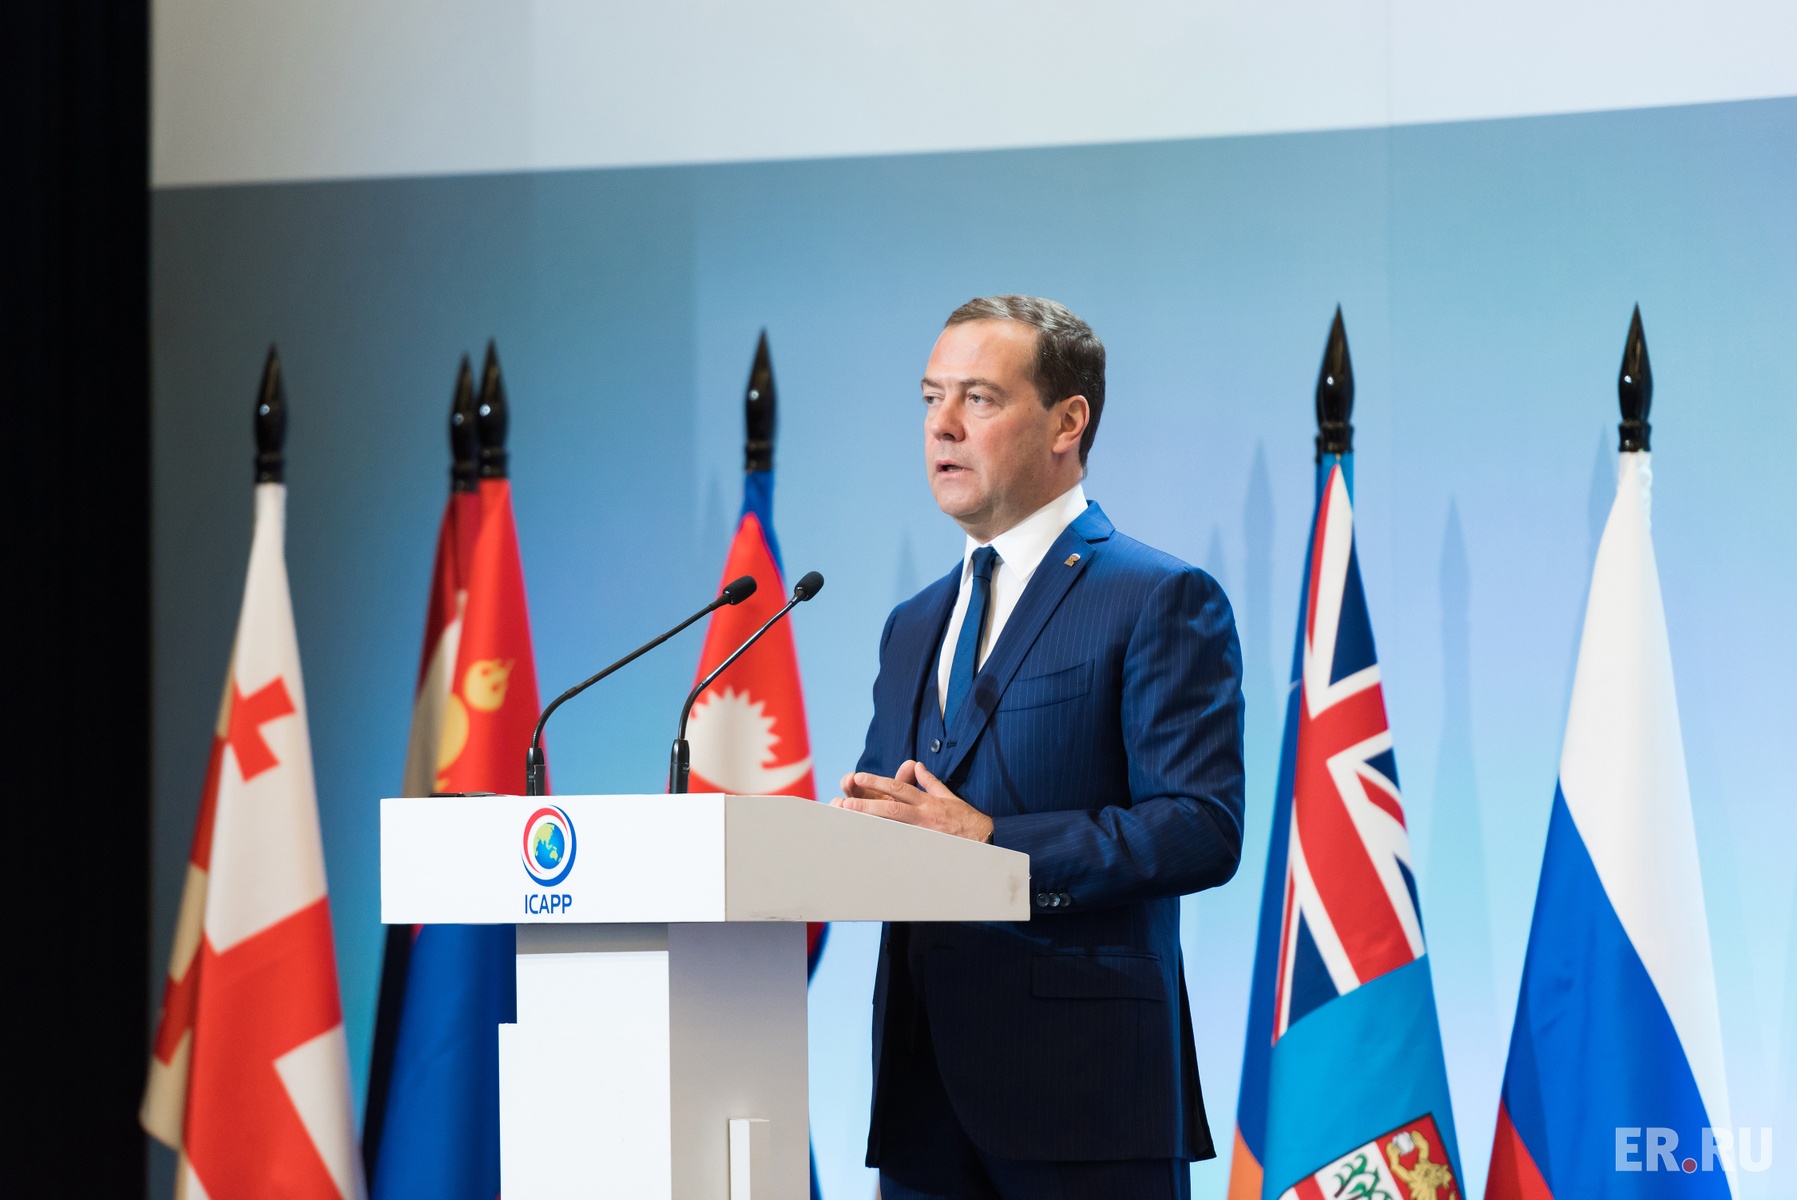 Премьер-министр РФ Дмитрий Медведев принял участие в Х Генеральной Ассамблее МКАПП